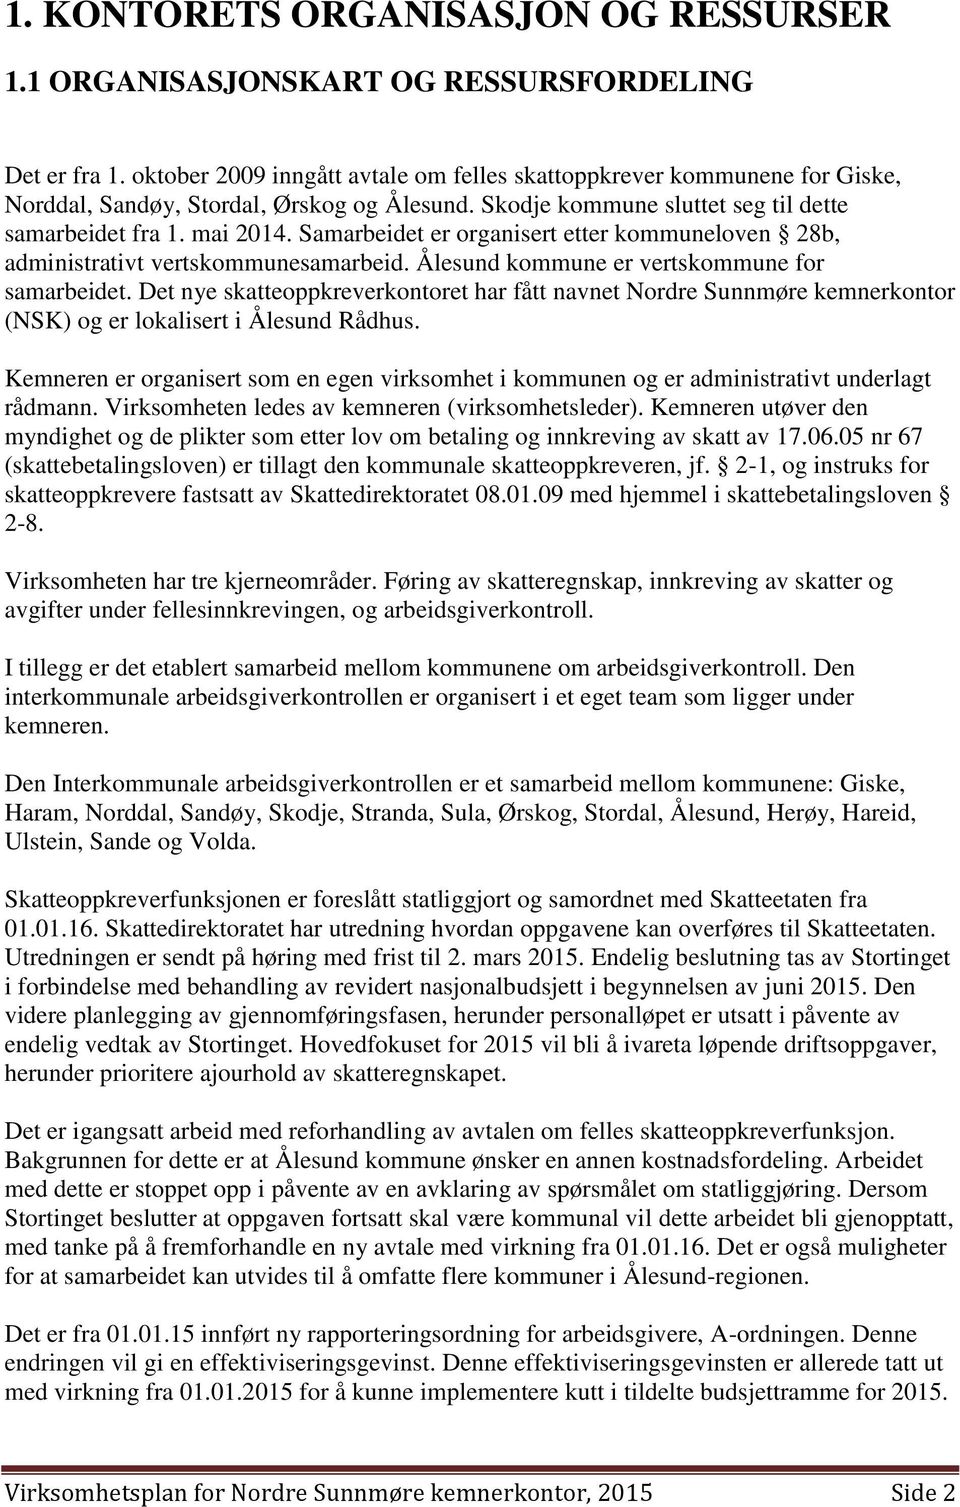 Samarbeidet er organisert etter kommuneloven 28b, administrativt vertskommunesamarbeid. Ålesund kommune er vertskommune for samarbeidet.